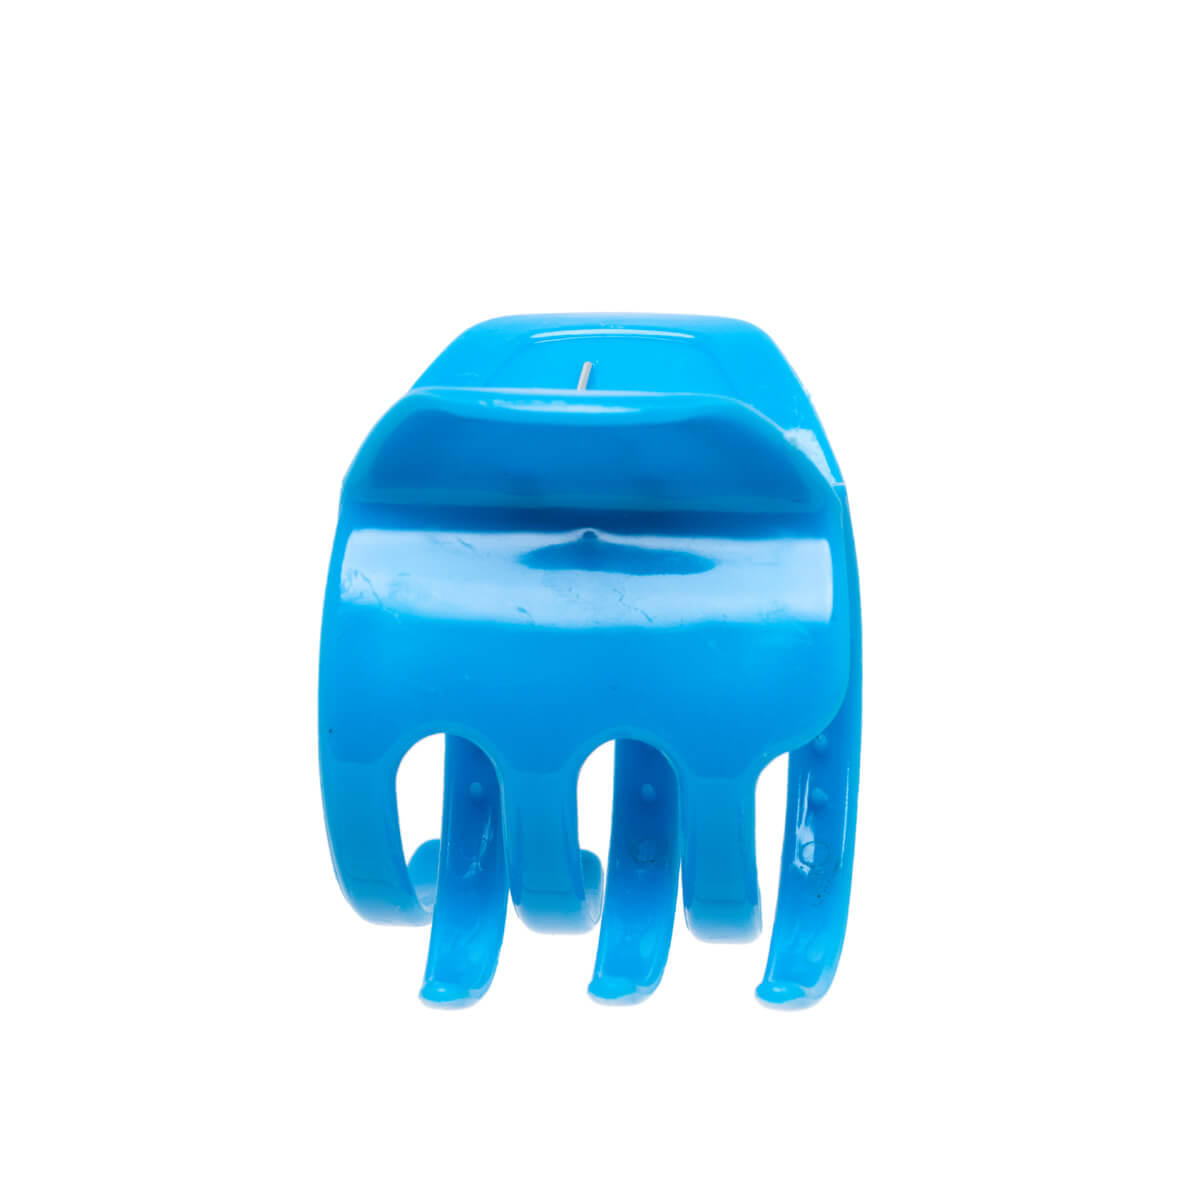 Plastic shark tooth hair clip 4.7cm